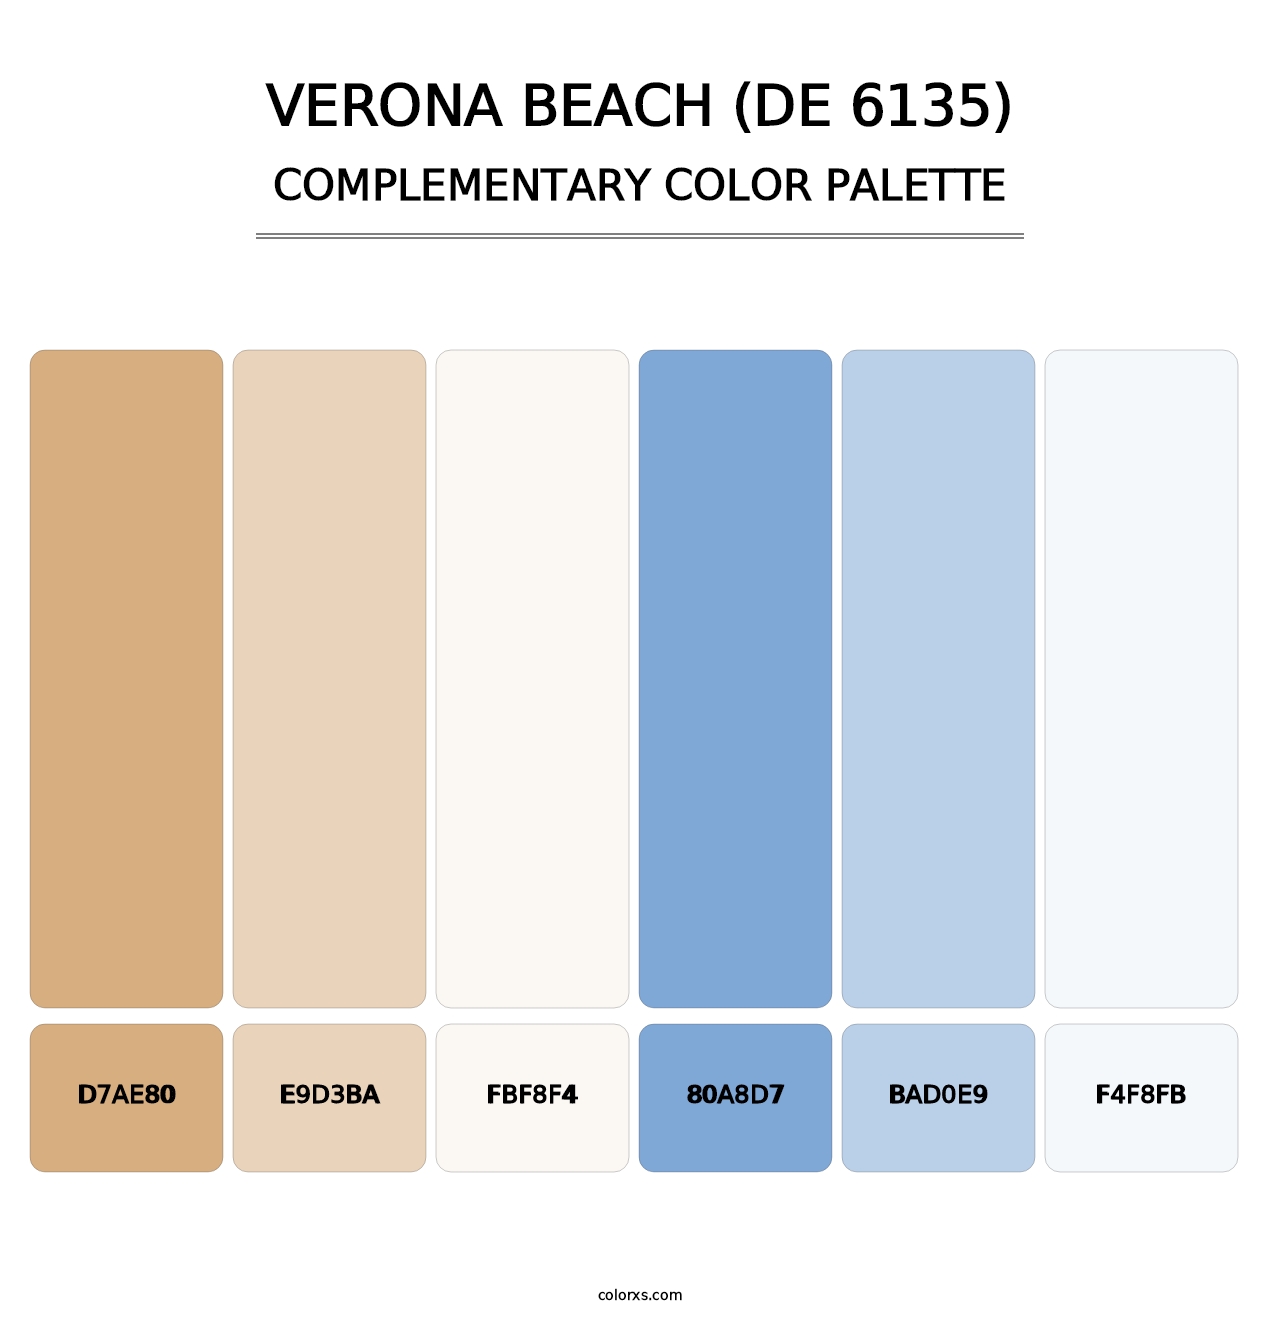 Verona Beach (DE 6135) - Complementary Color Palette